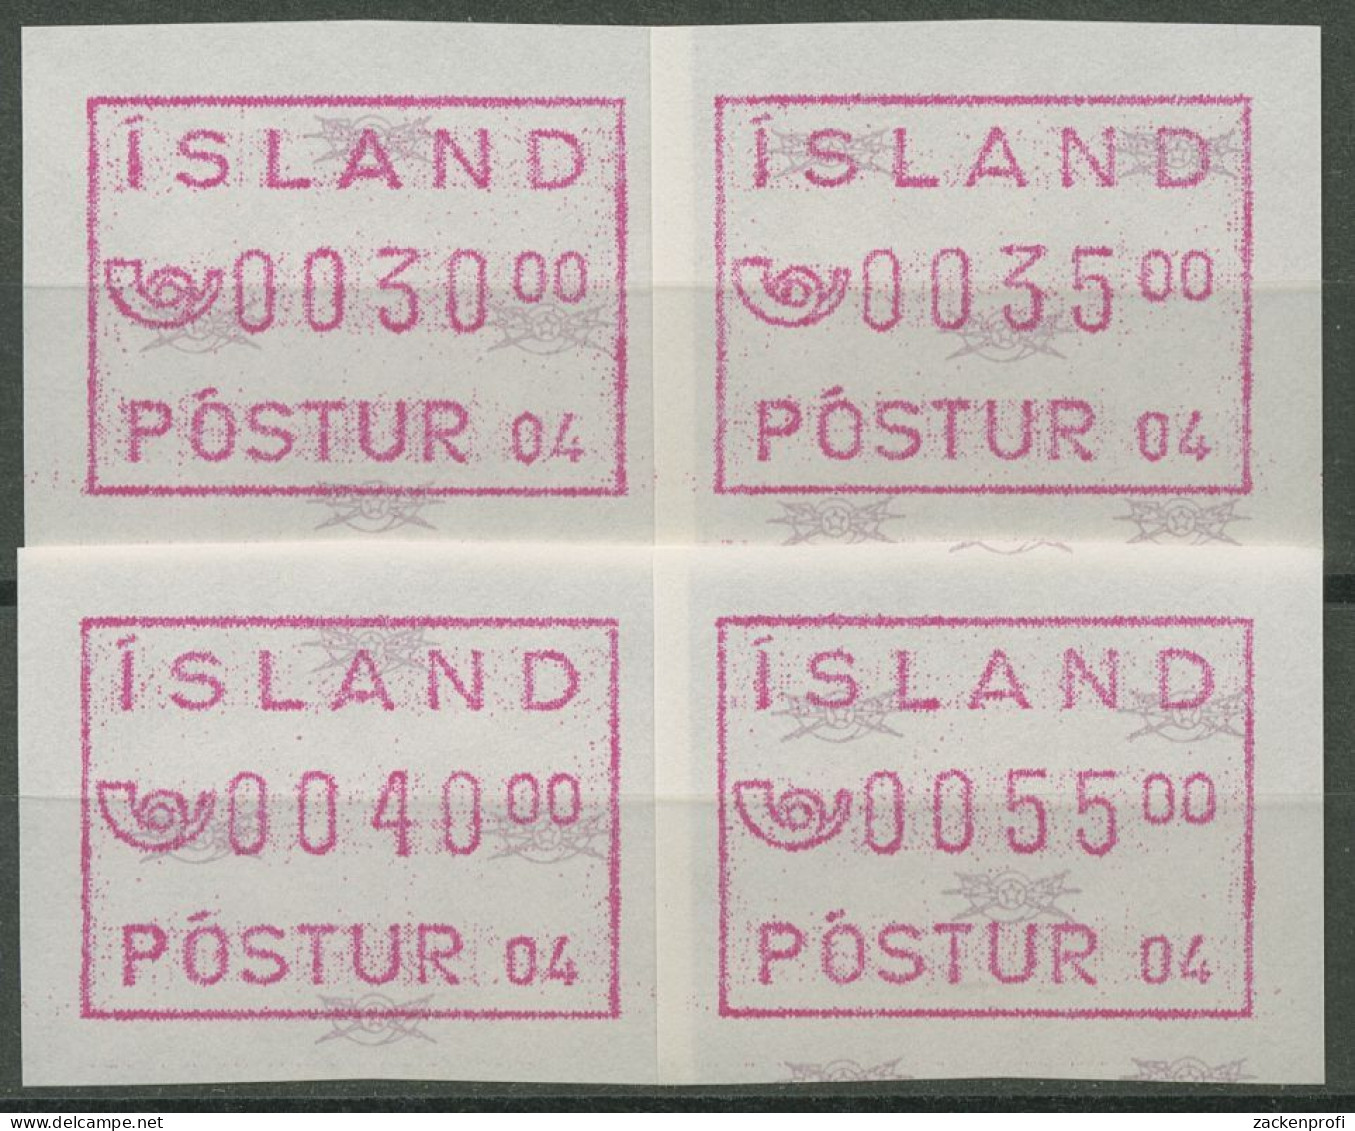 Island ATM 1993 Freimarke Automat 04, Satz 4 Werte, ATM 2.2 S2 Postfrisch - Frankeervignetten (Frama)